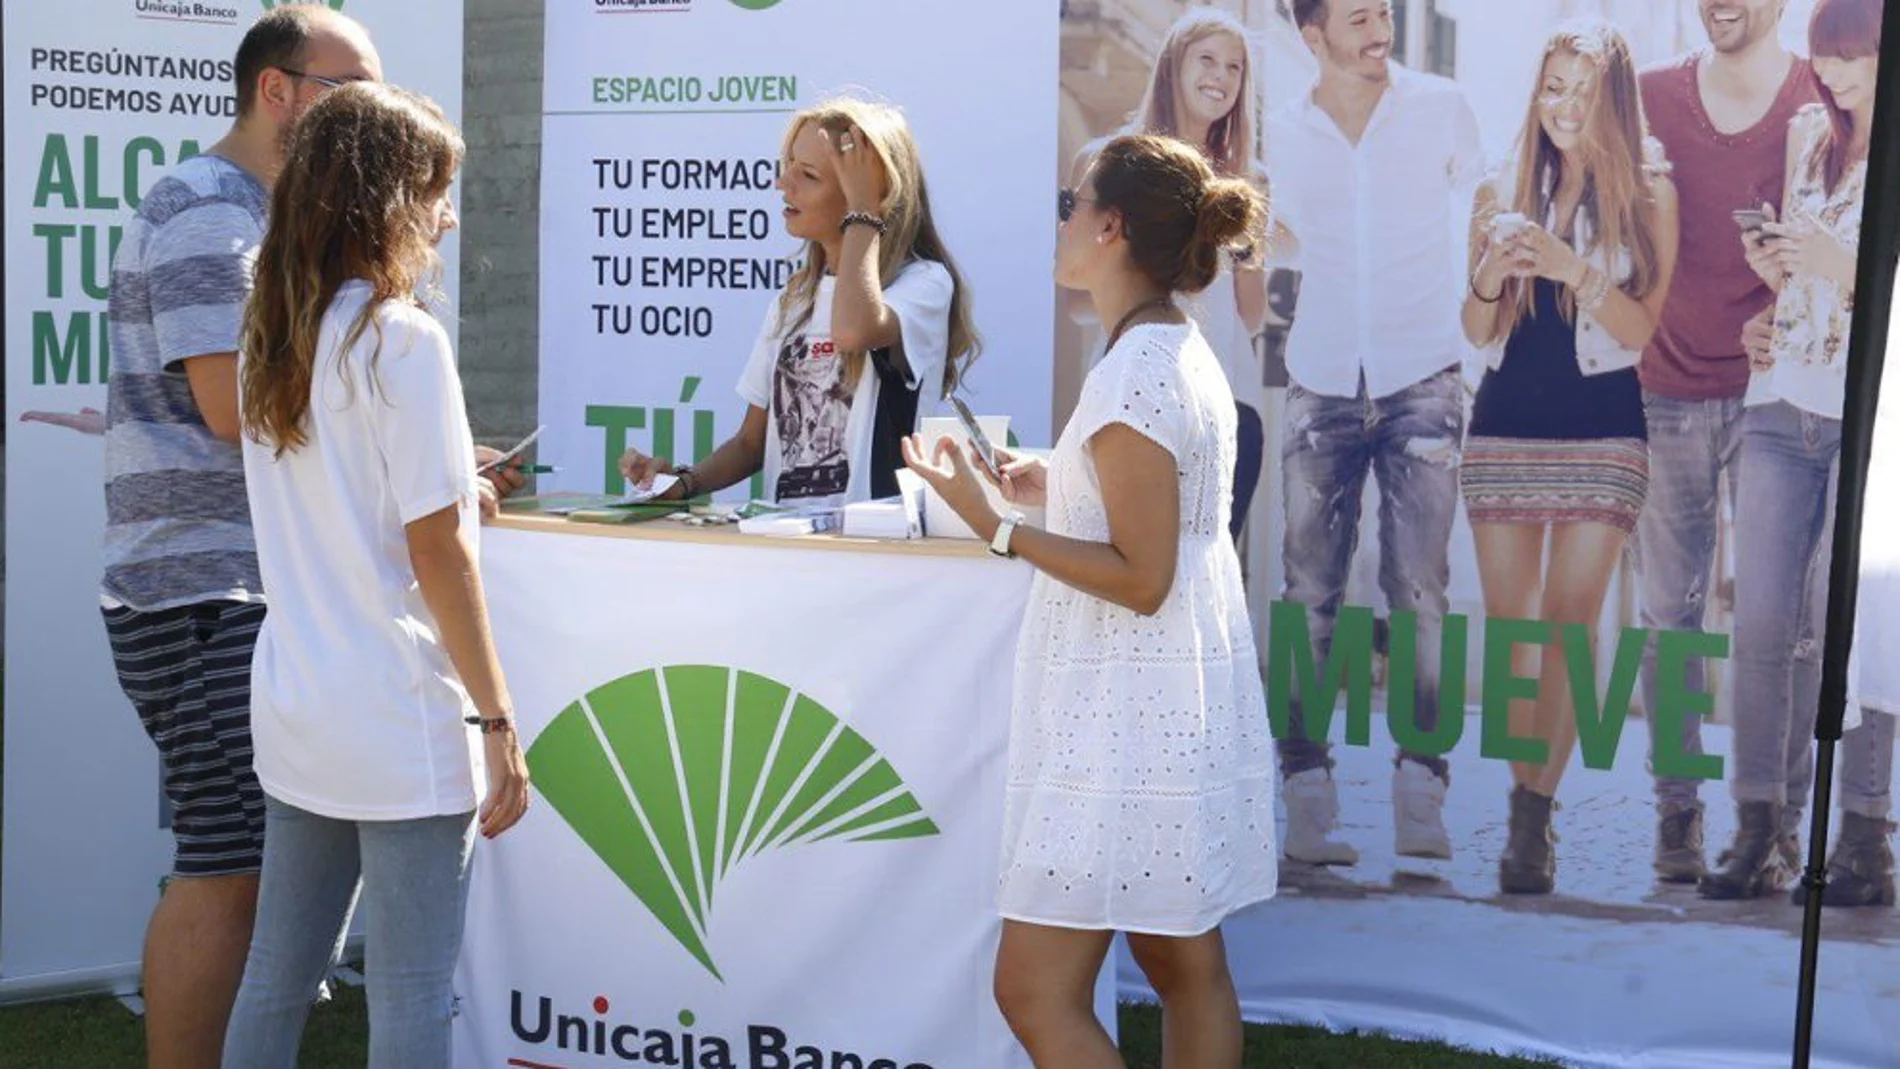 Unicaja Banco se vuelca con el apoyo a los jóvenes